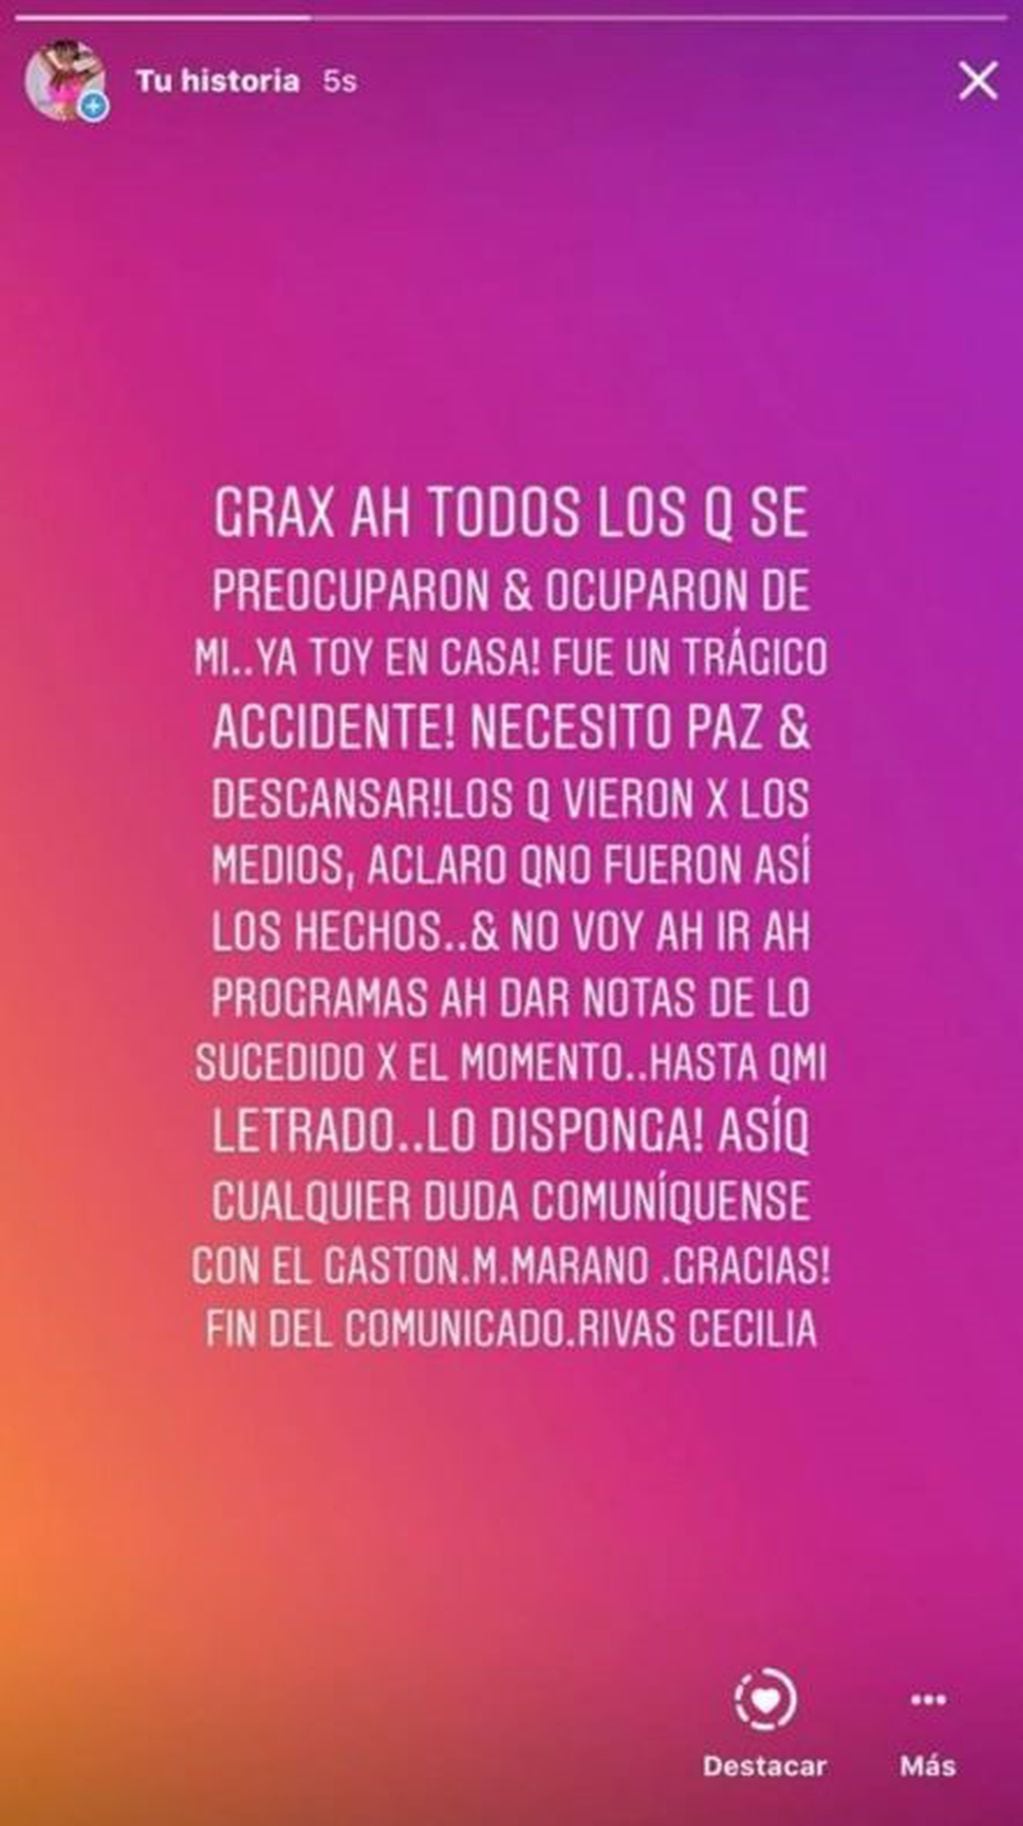 El mensaje de Cecilia Rivas en Instagram.